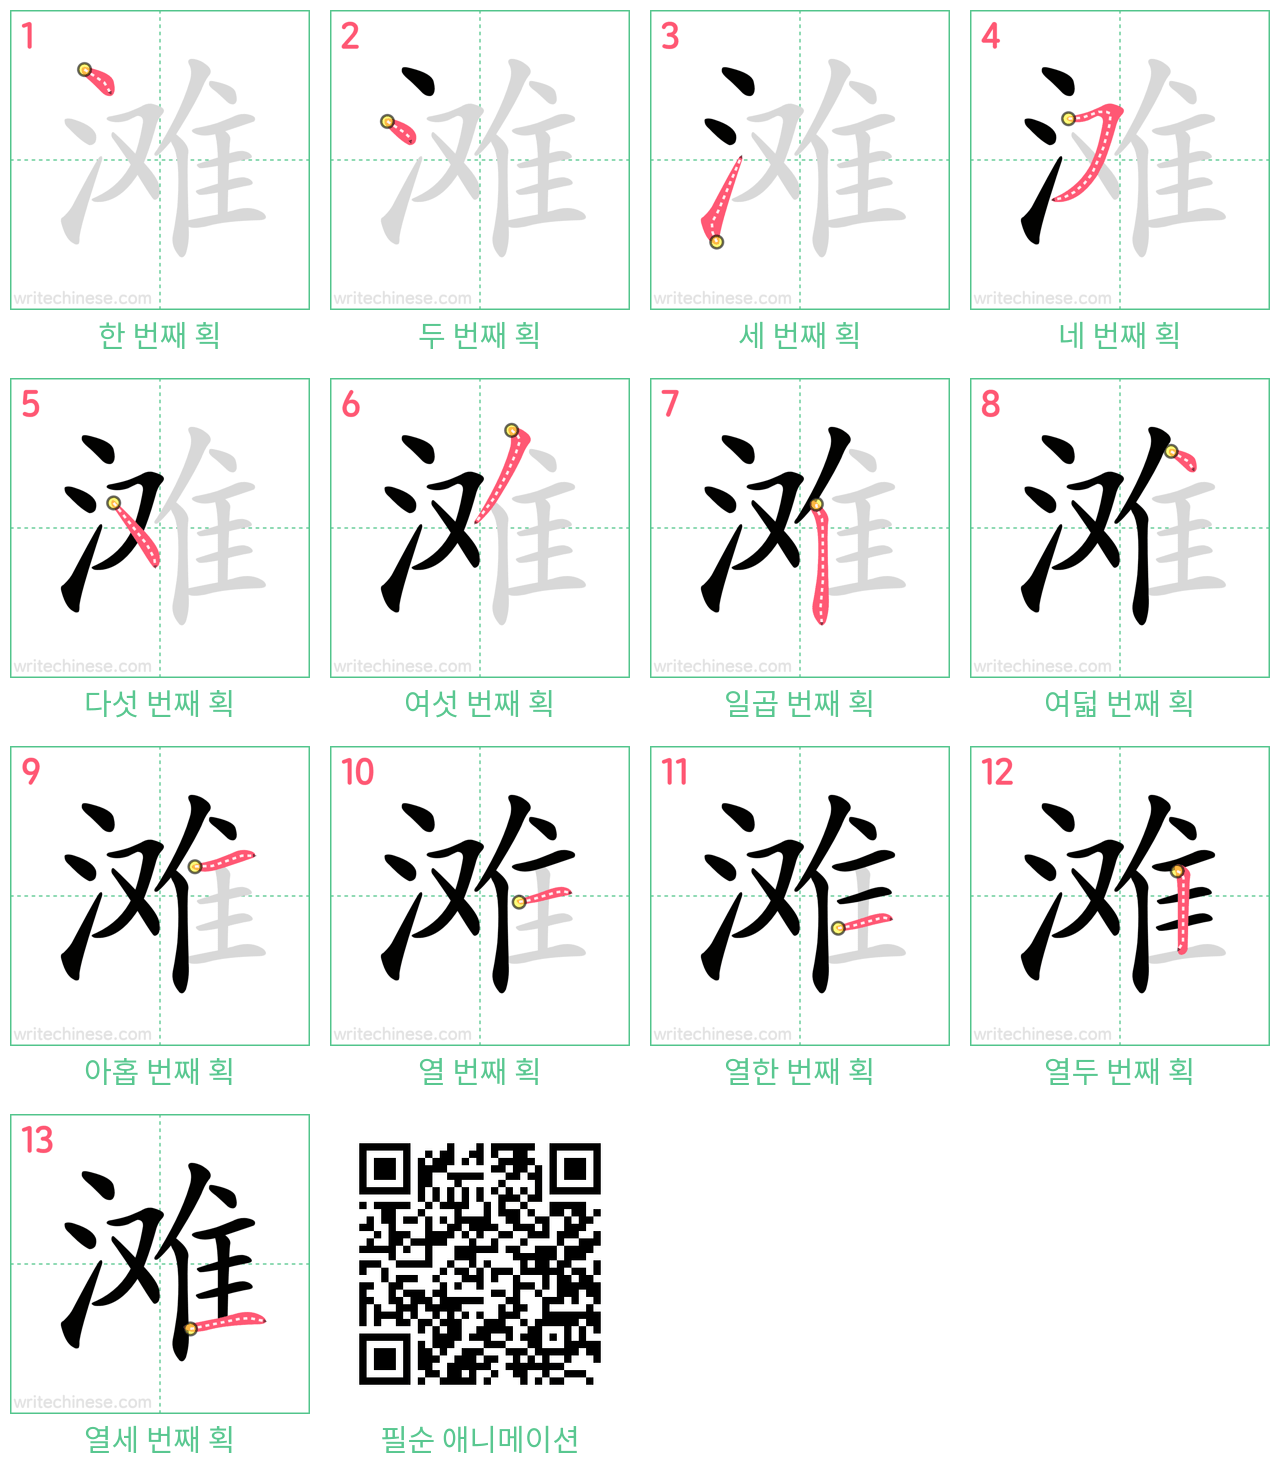 滩 step-by-step stroke order diagrams